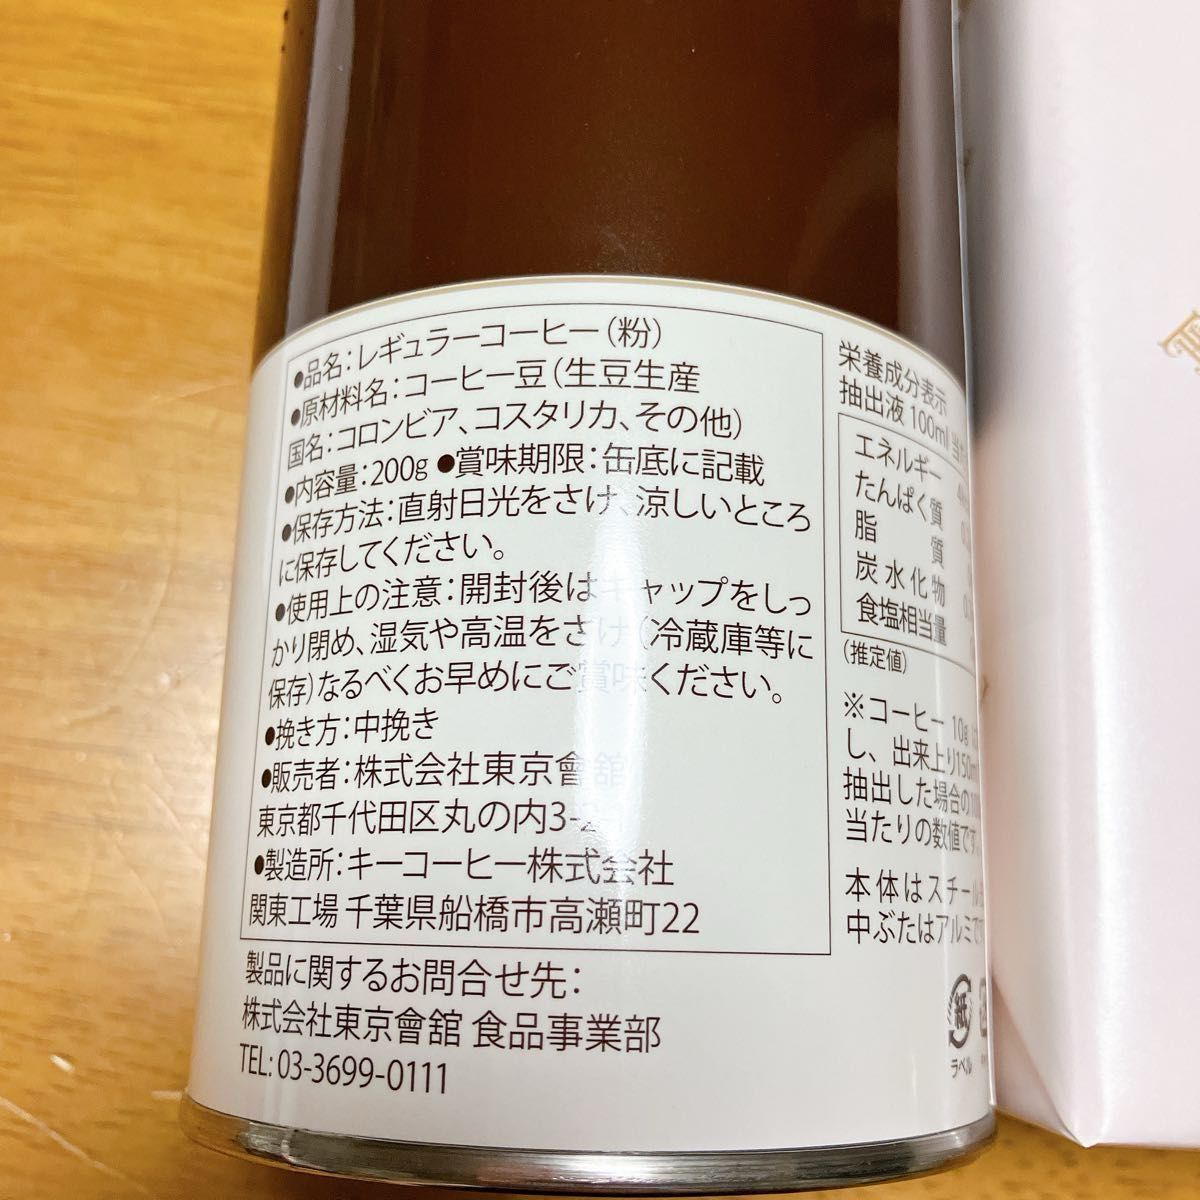 東京會舘 オリジナルブレンドコーヒー プティガトー 焼き菓子詰め合わせ